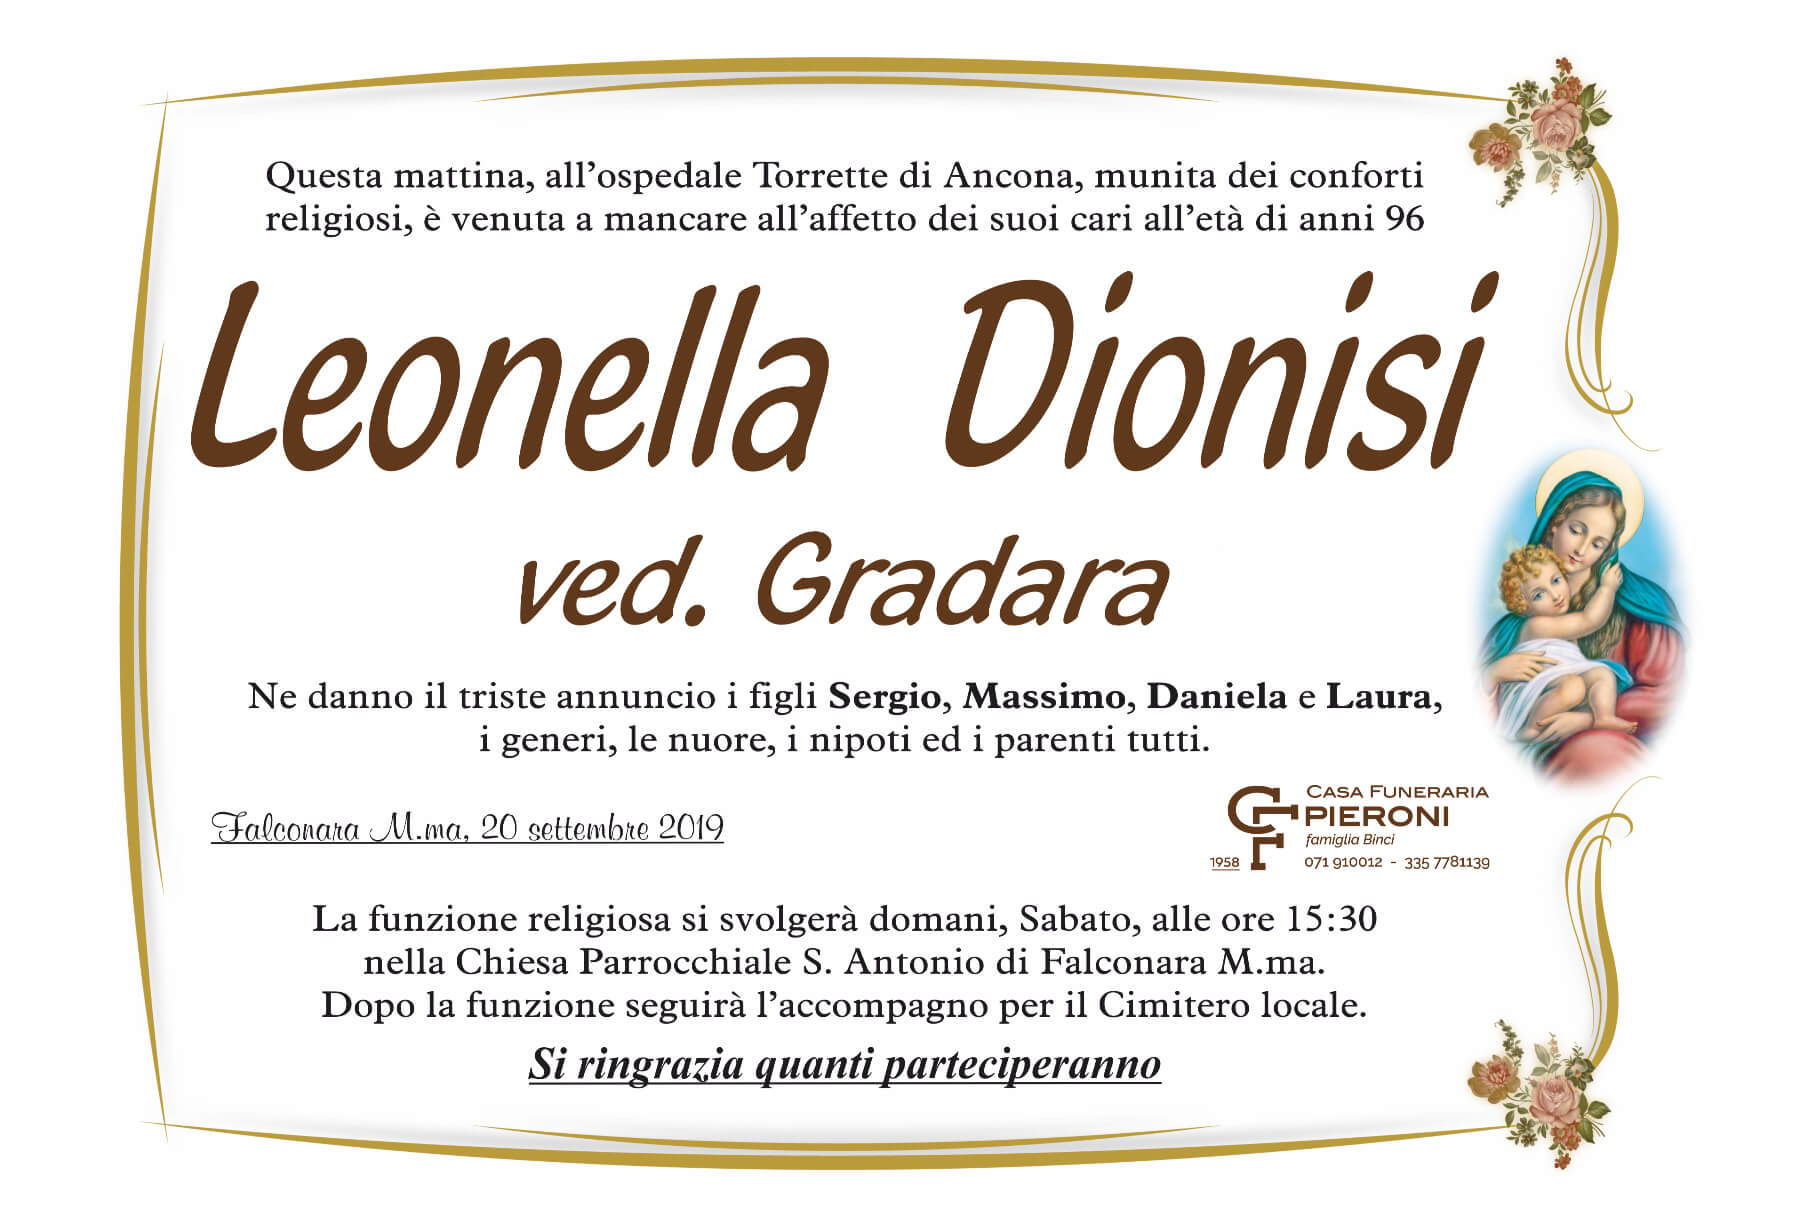 Leonella Dionisi